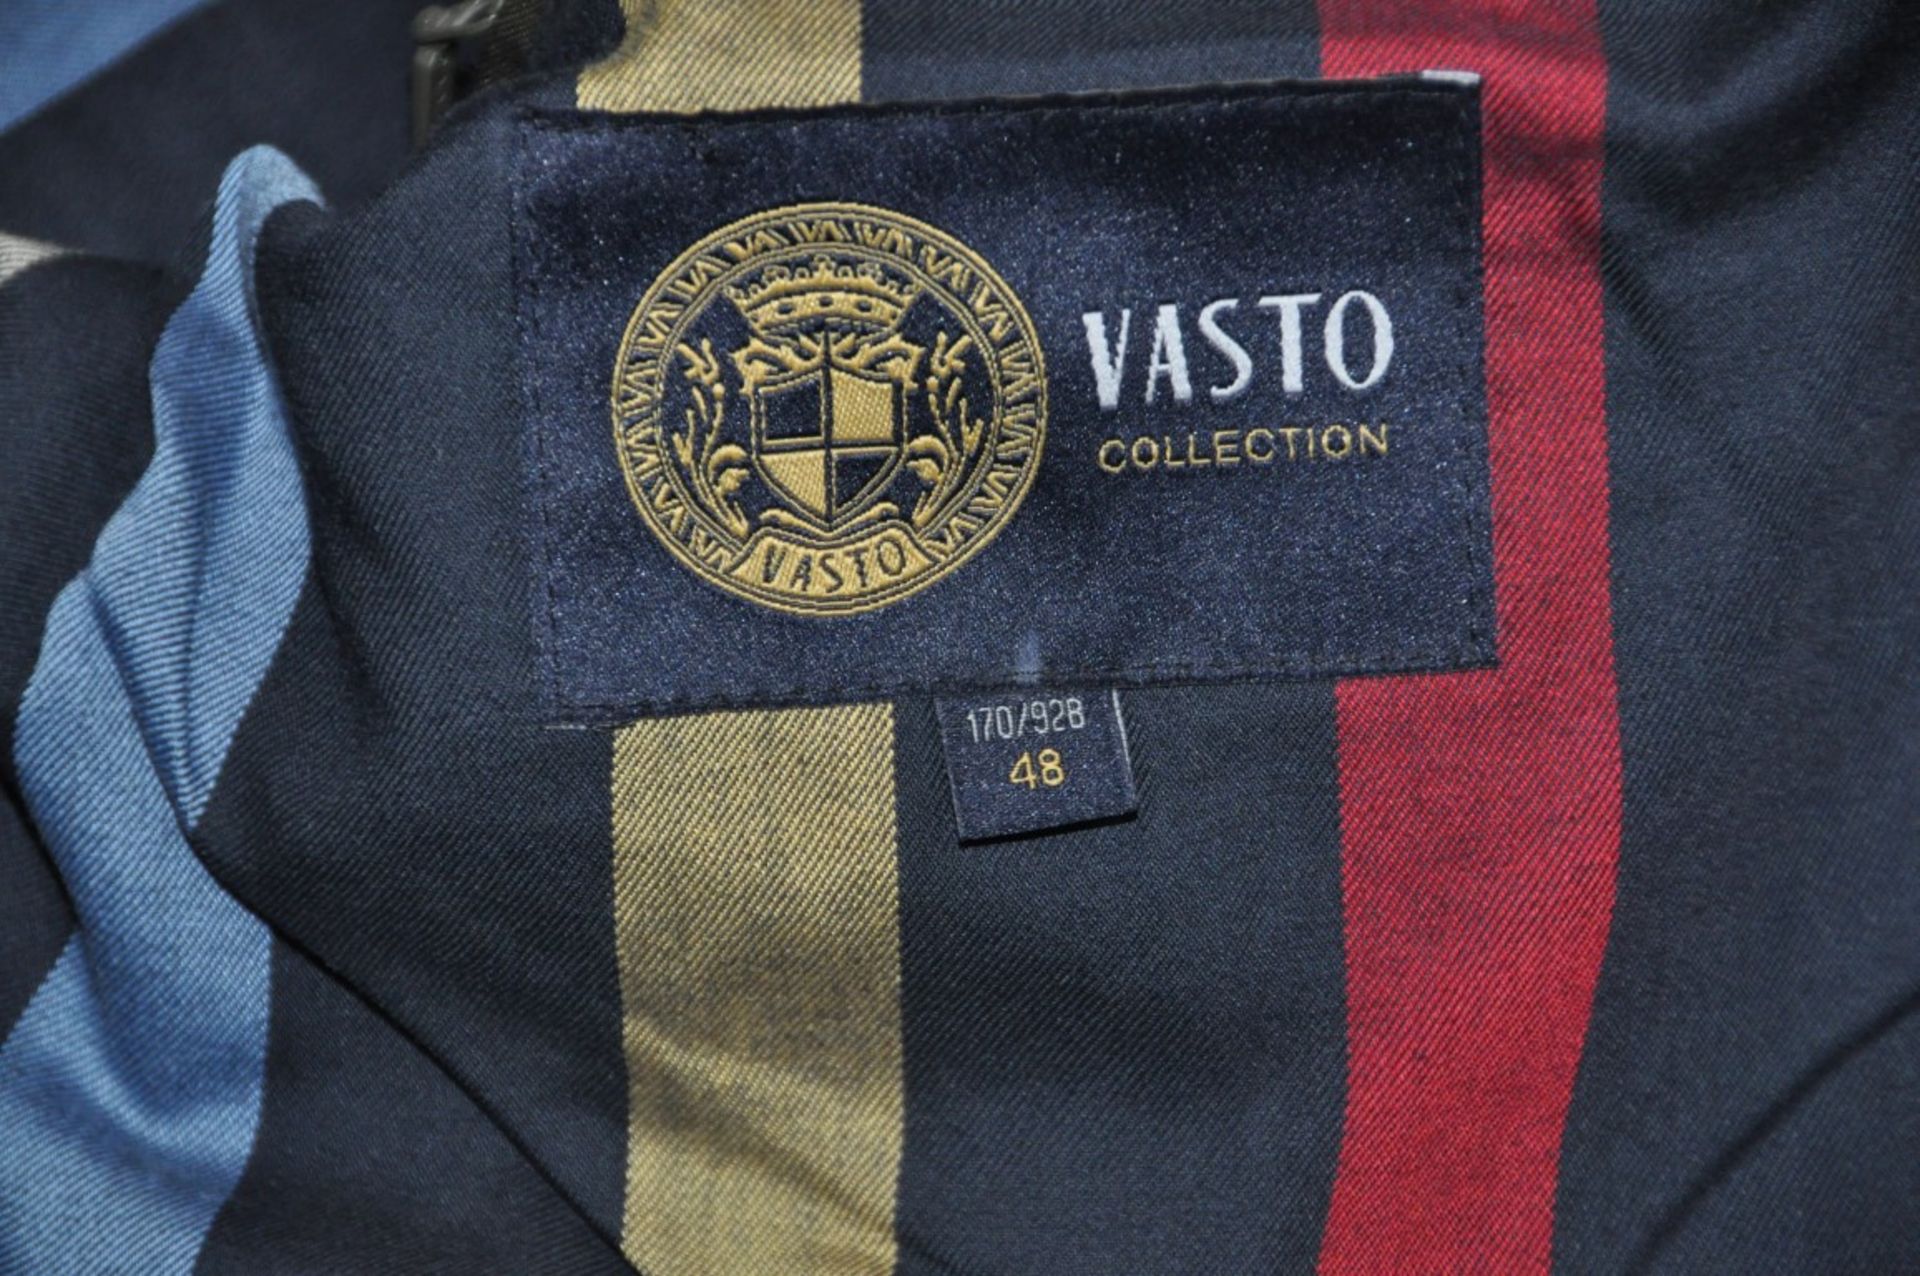 1 x Men's Long Sleeve Jacket By International Luxury Brand "Vasto" (BAS7101) – Size: Large - Colour: - Image 8 of 9